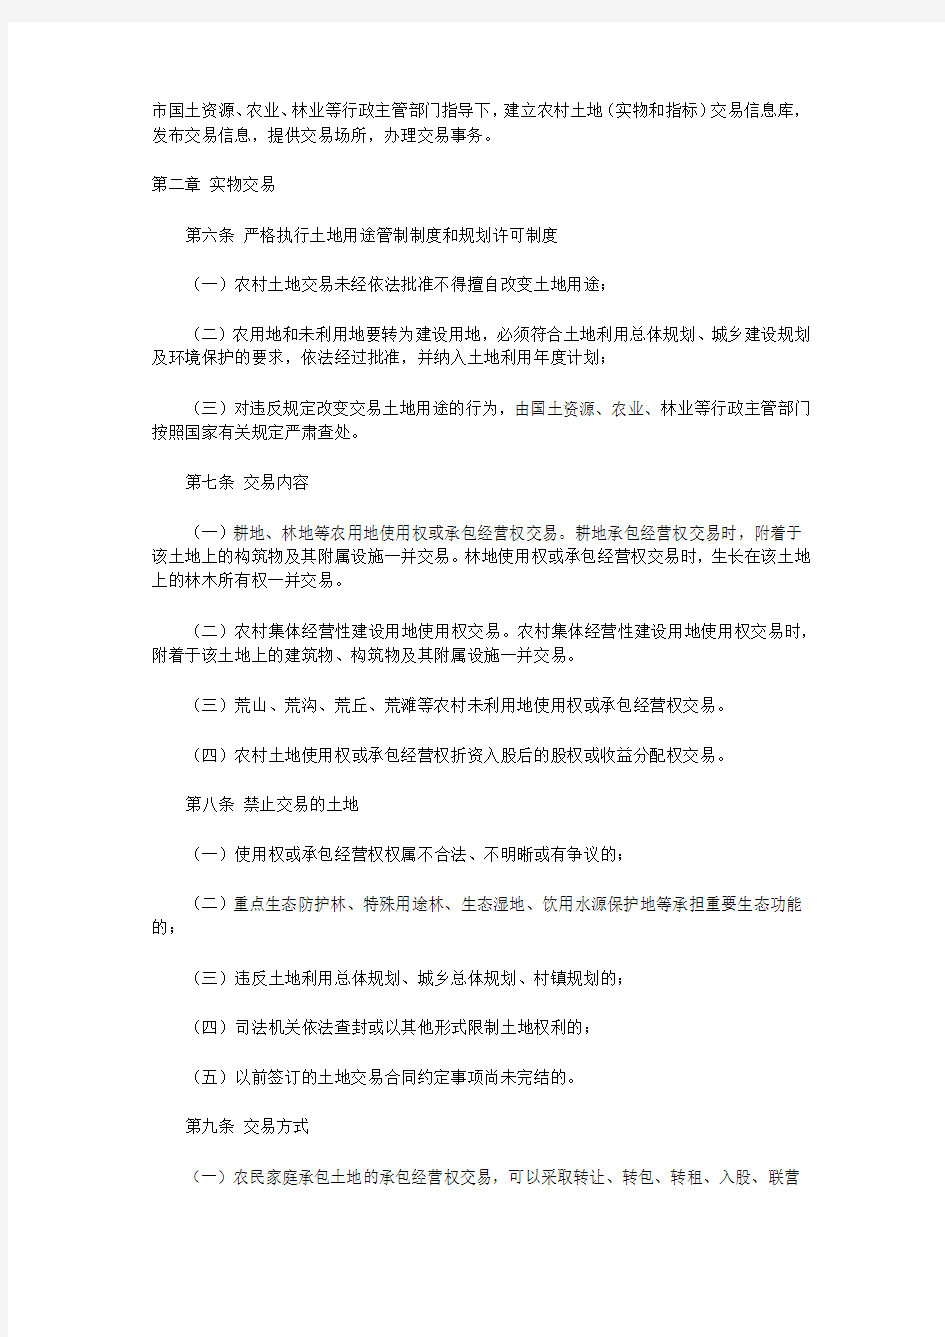 重庆农村土地交易所管理暂行办法